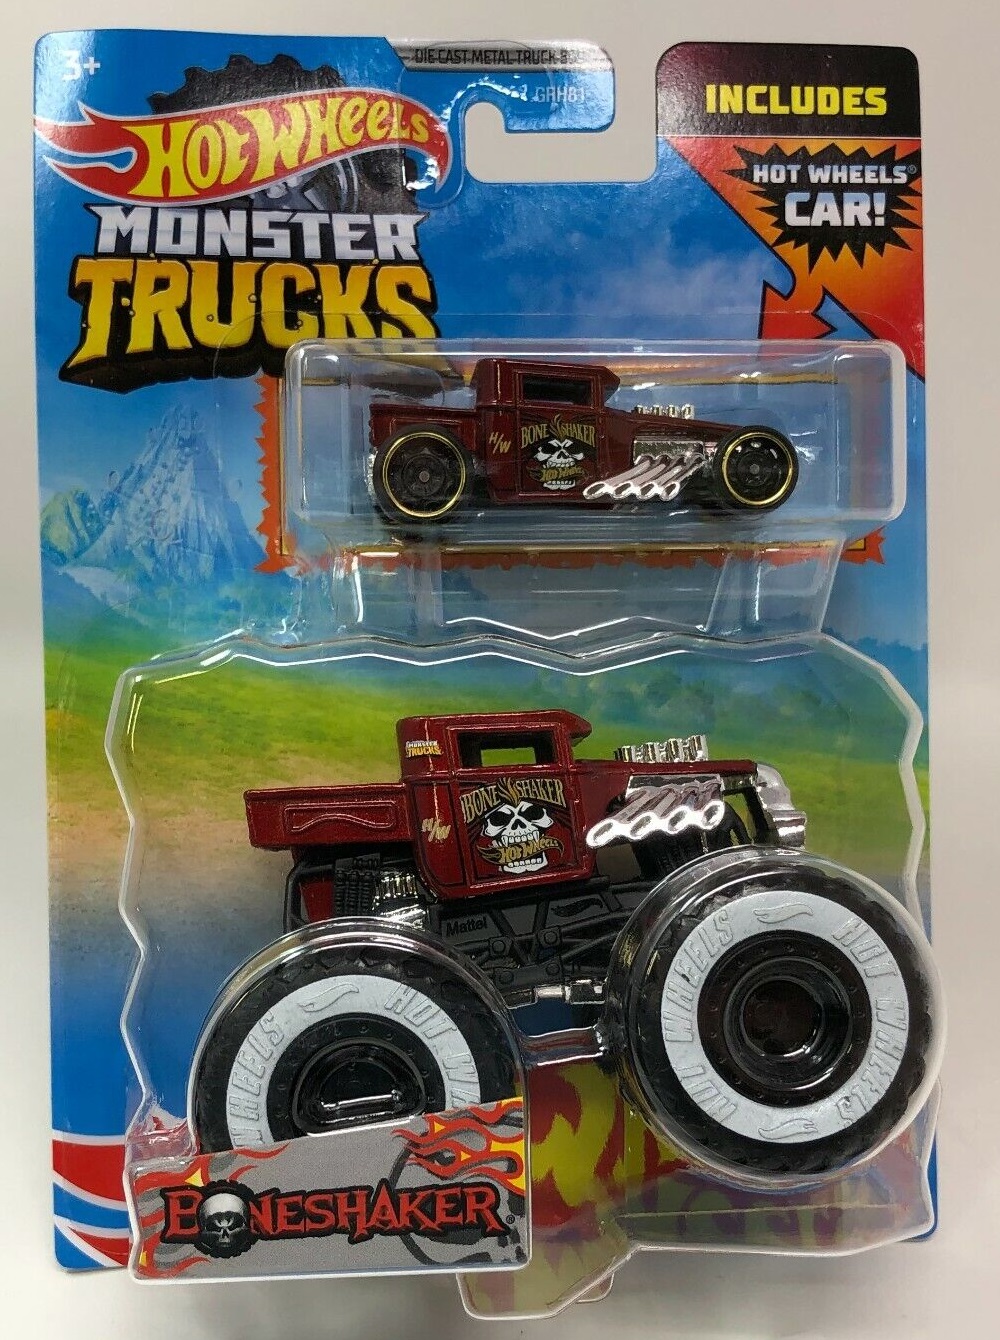 Hot Wheels Monster Trucks 1:64 Scale Bone Shaker Crushable Car 6/75,  Black/red